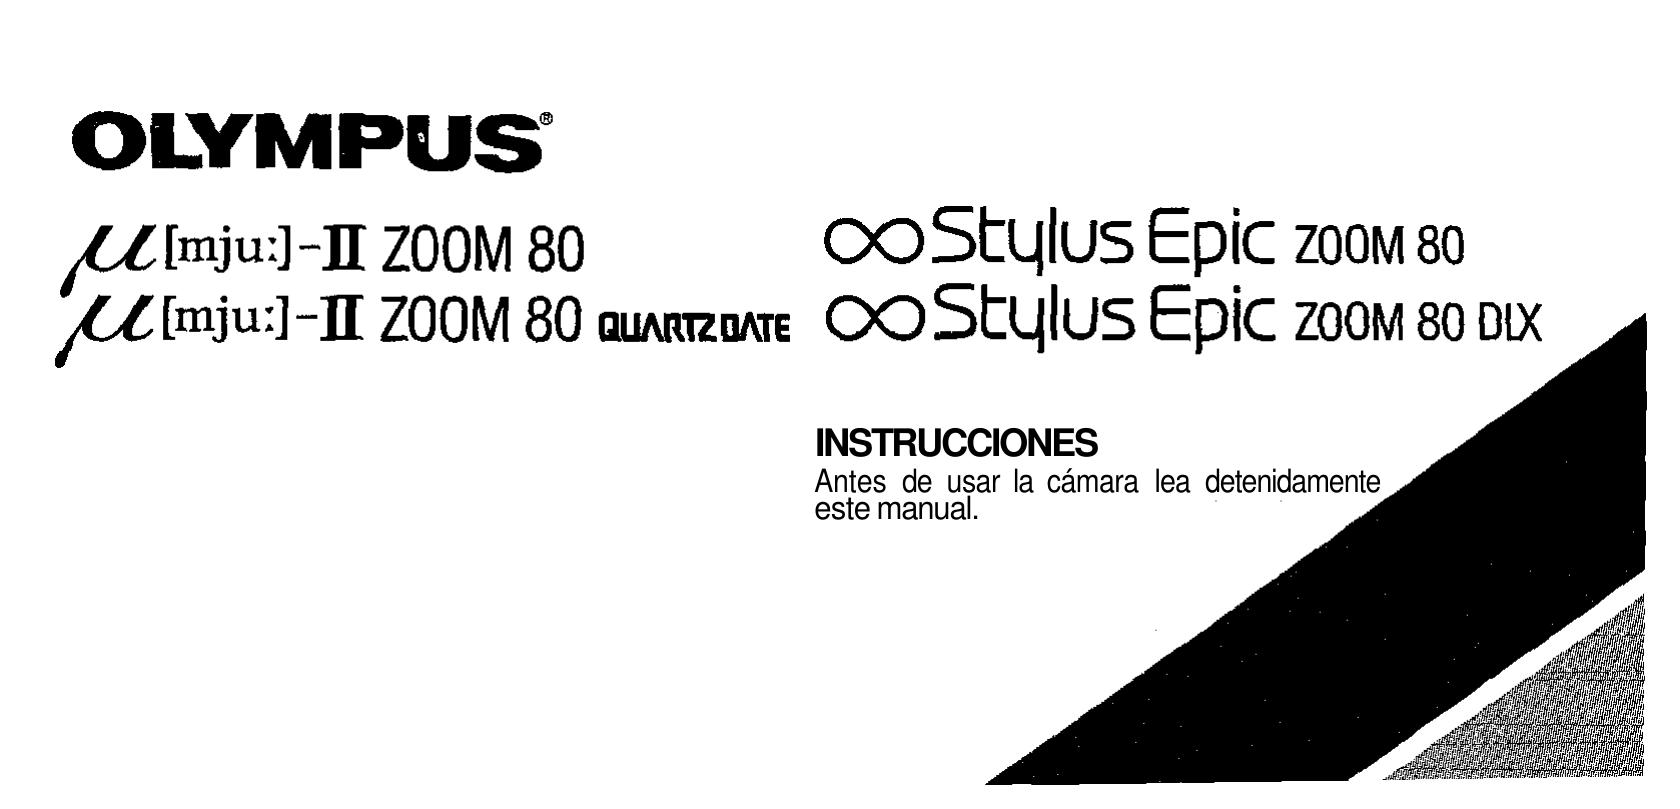 Olympus 80 Film Camera User Manual